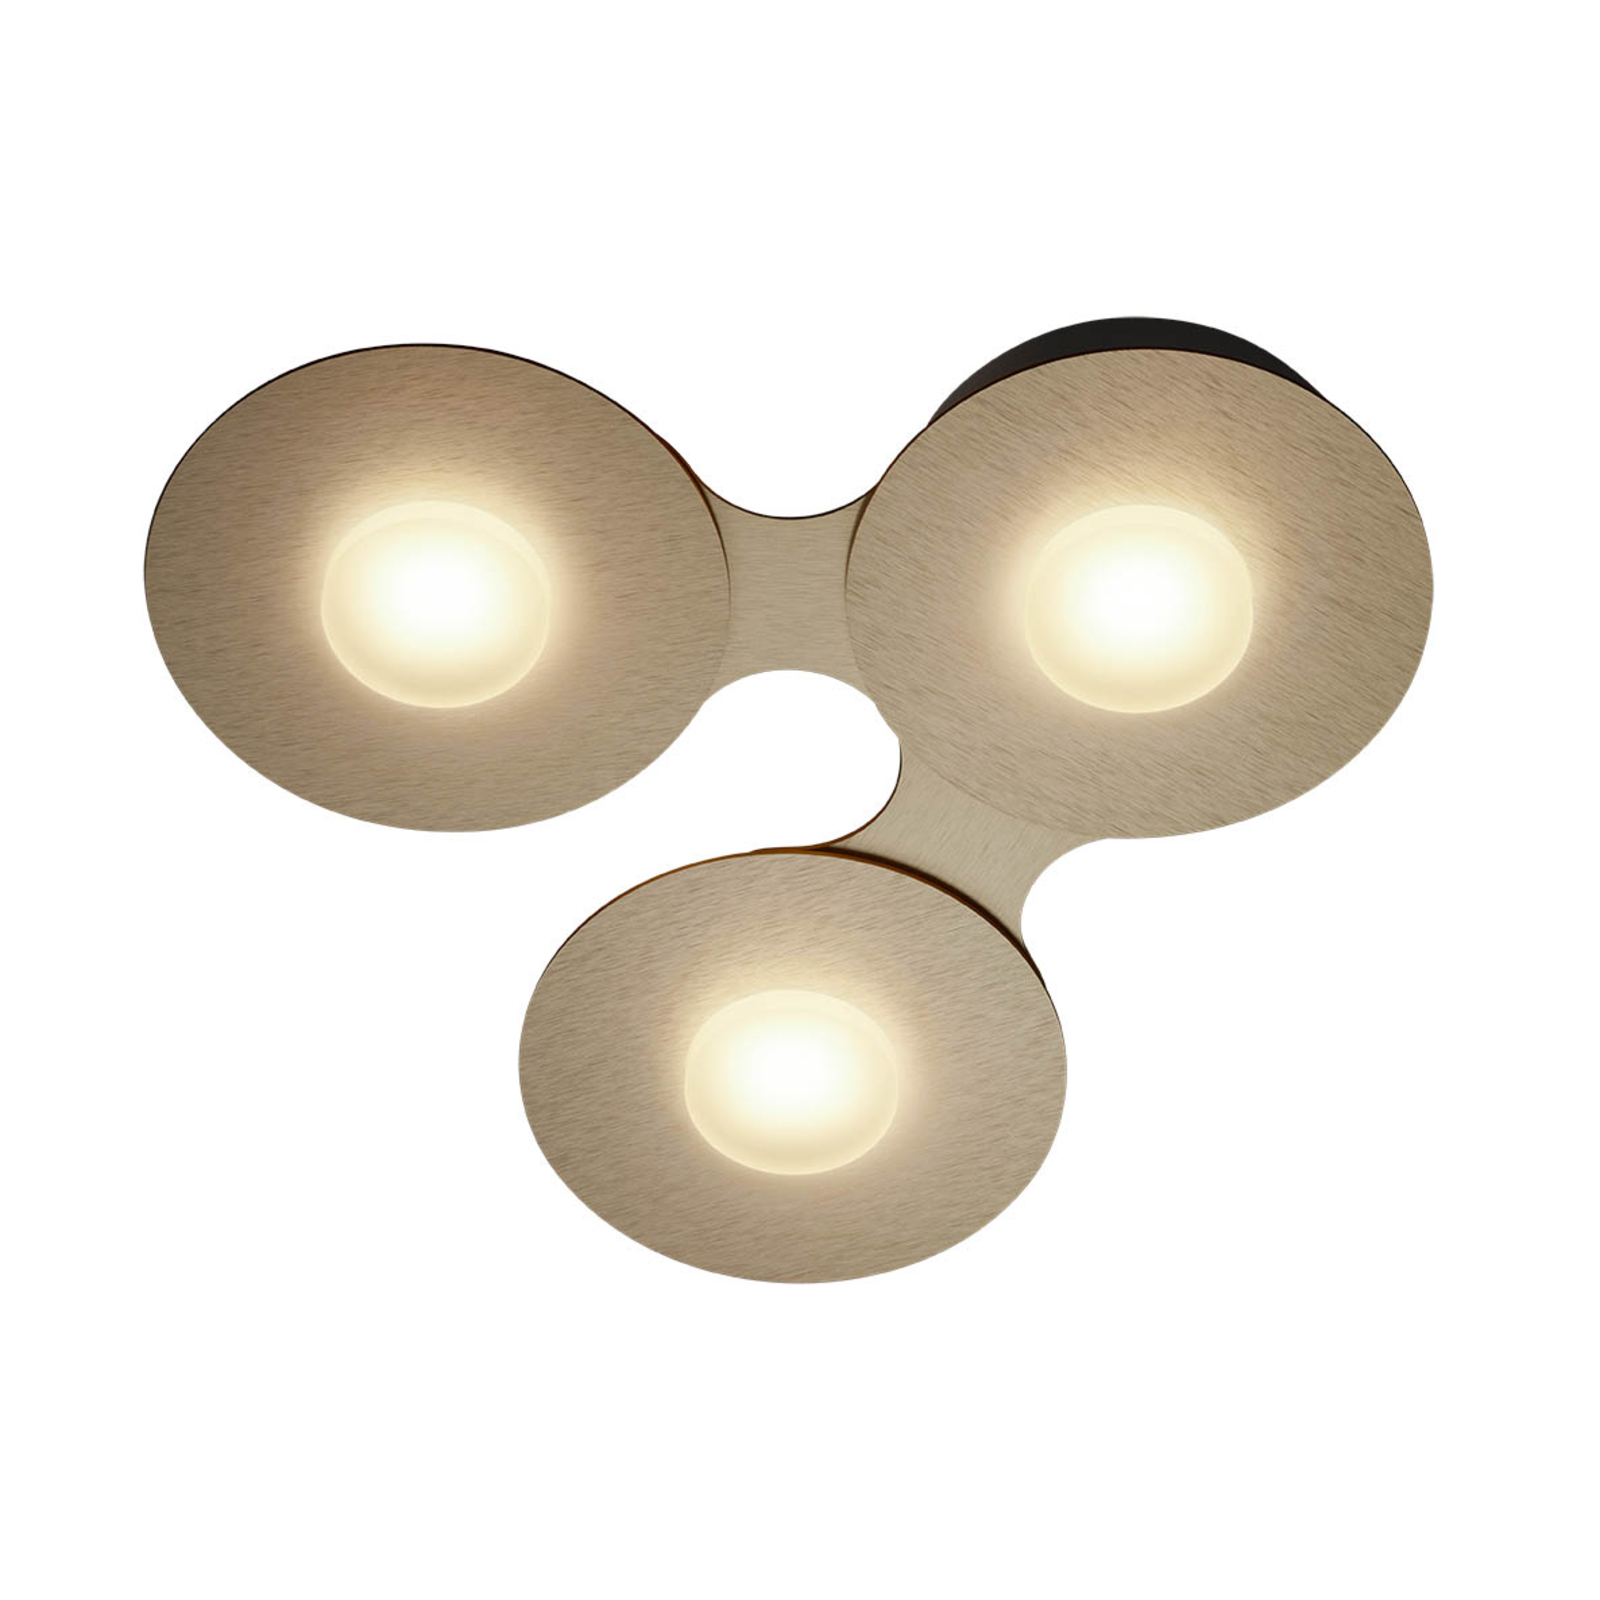 GROSSMANN Disc LED-Deckenleuchte, goldbraun, 3fl